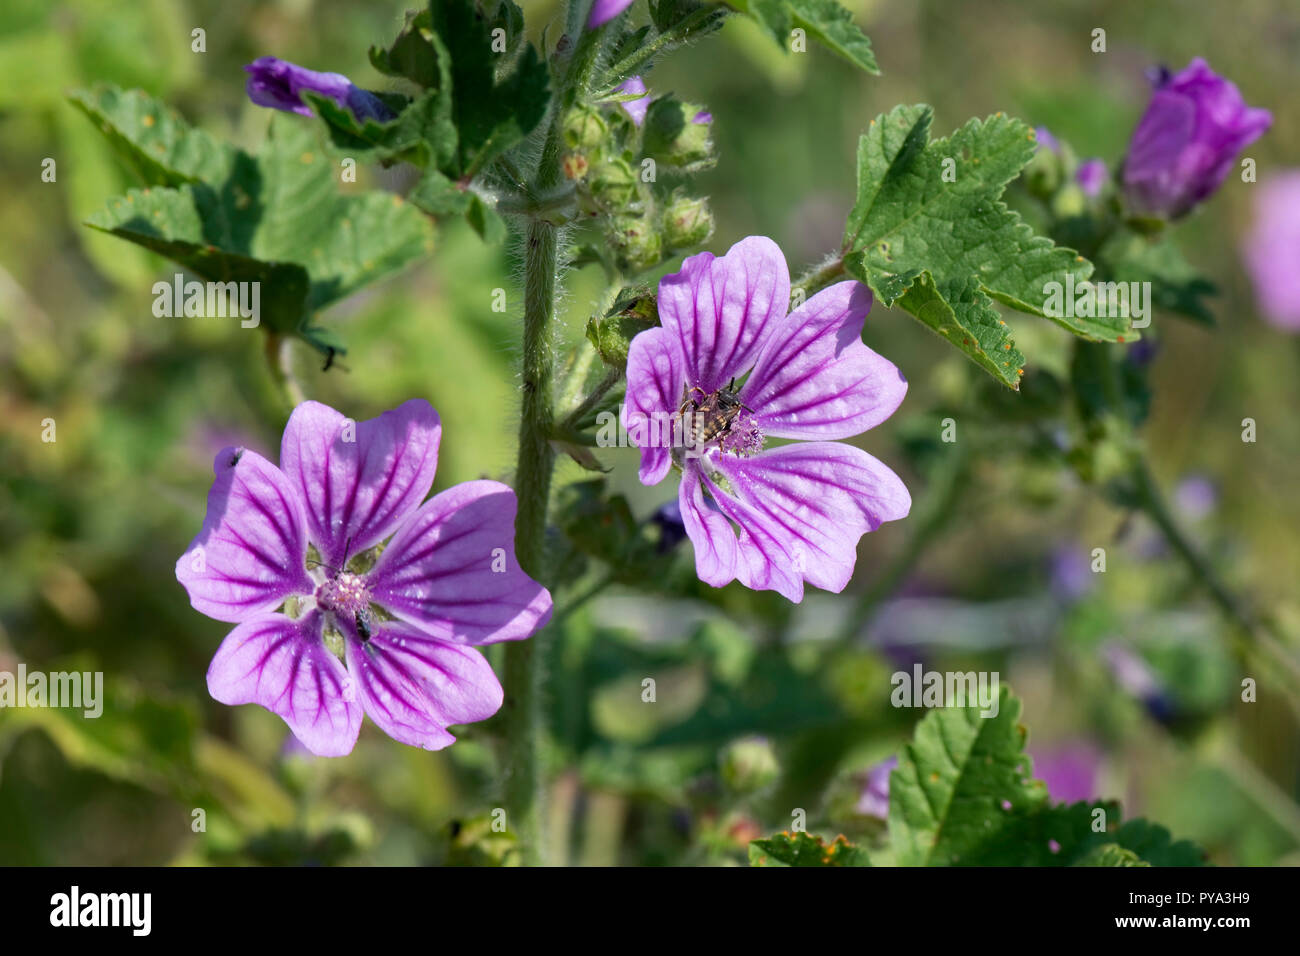 Comune, malva Malva Sylvestris, Deep Purple linee fiori lilla con la visita di insetti, Berkshire, Luglio Foto Stock